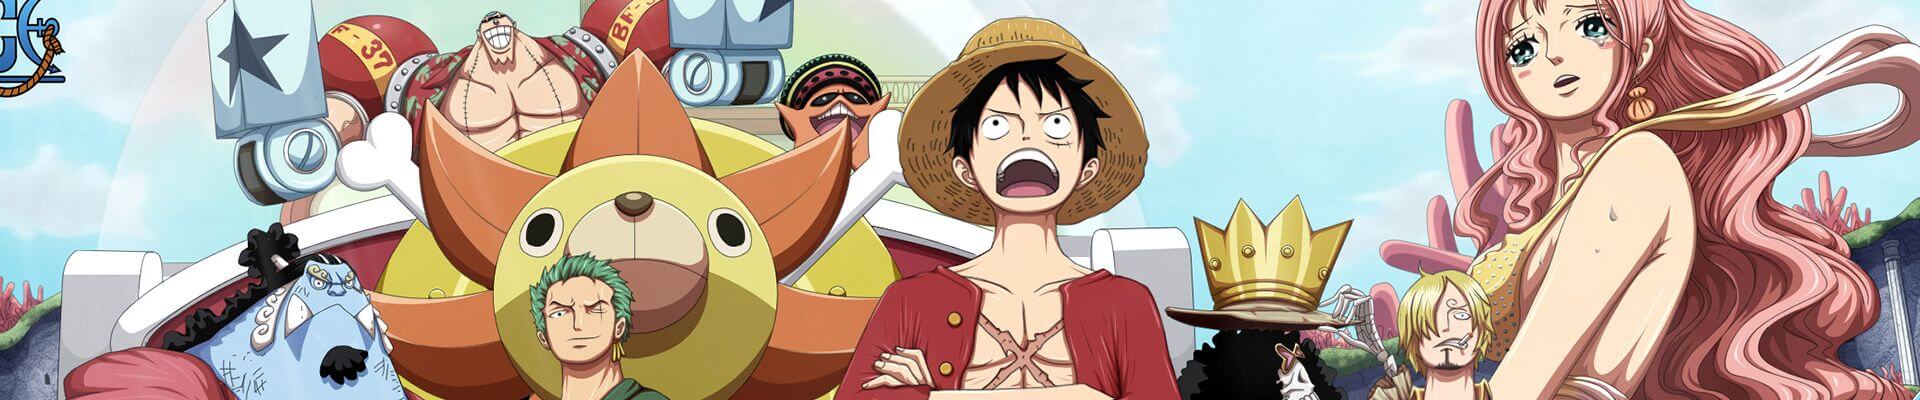 One Piece, famoso anime, vai ganhar série em live-action na Netflix